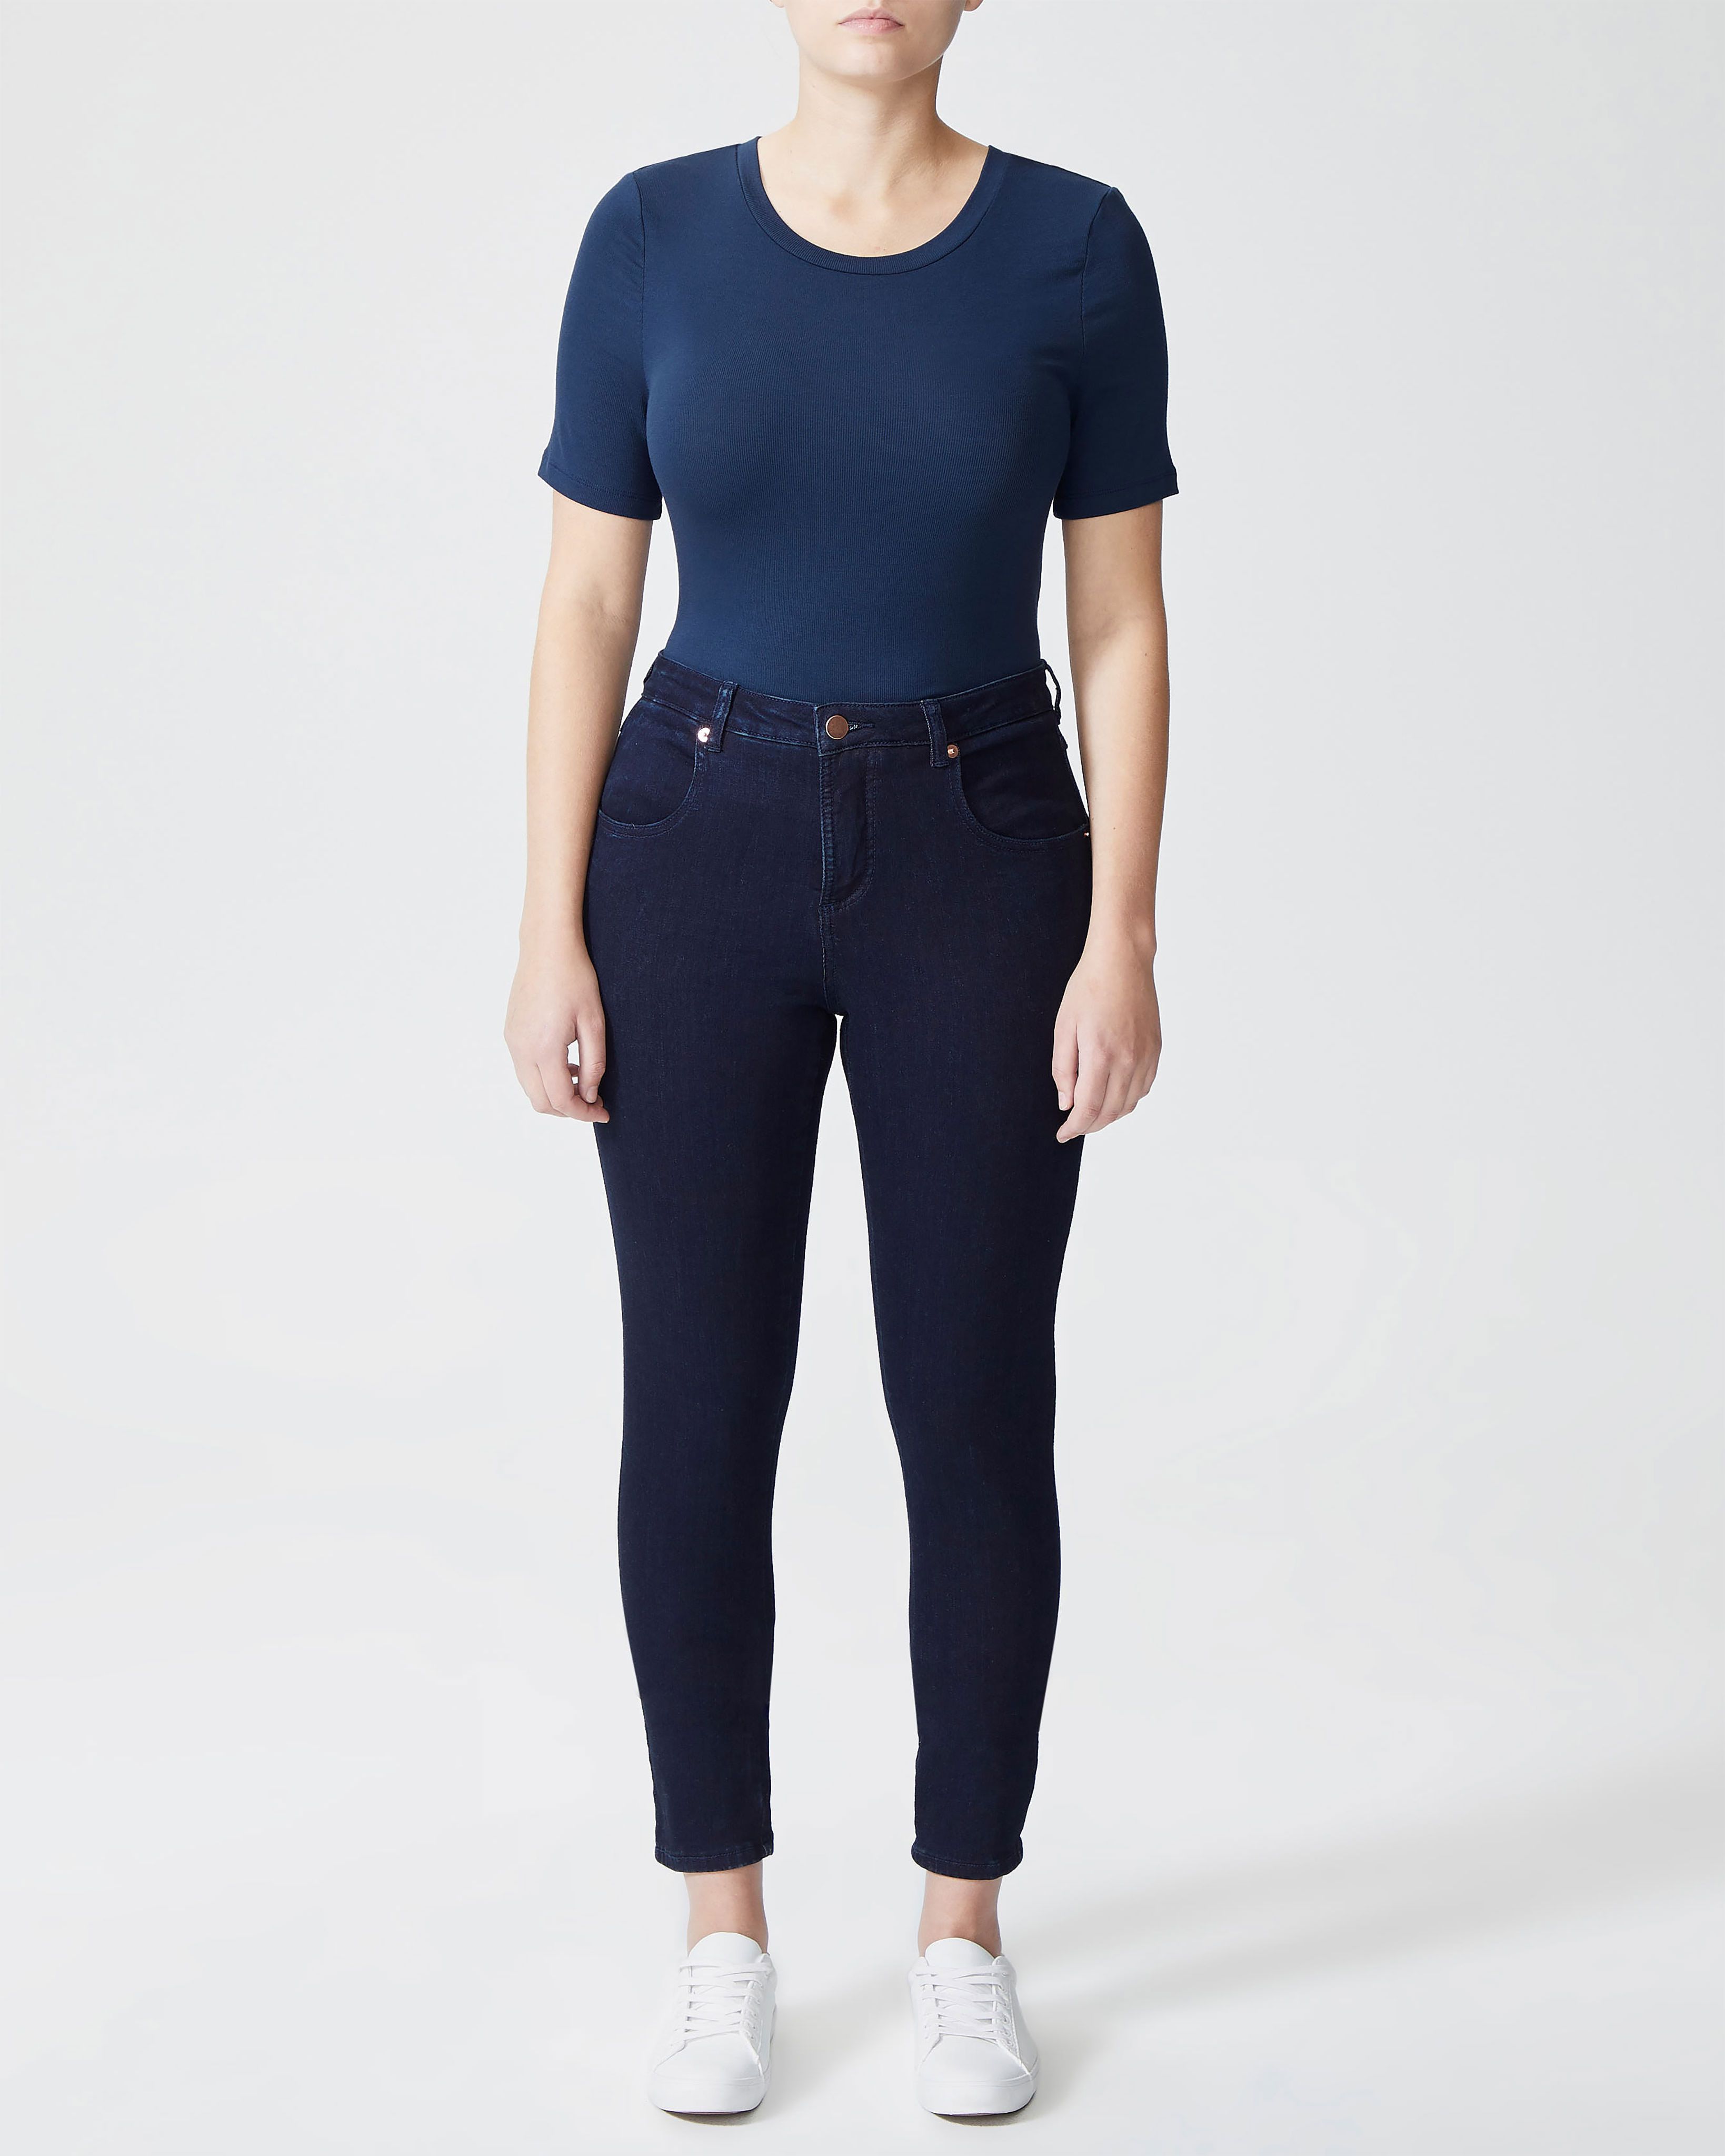 Seine Mid Rise Skinny Jeans 27 Inch - Dark Indigo | Universal Standard